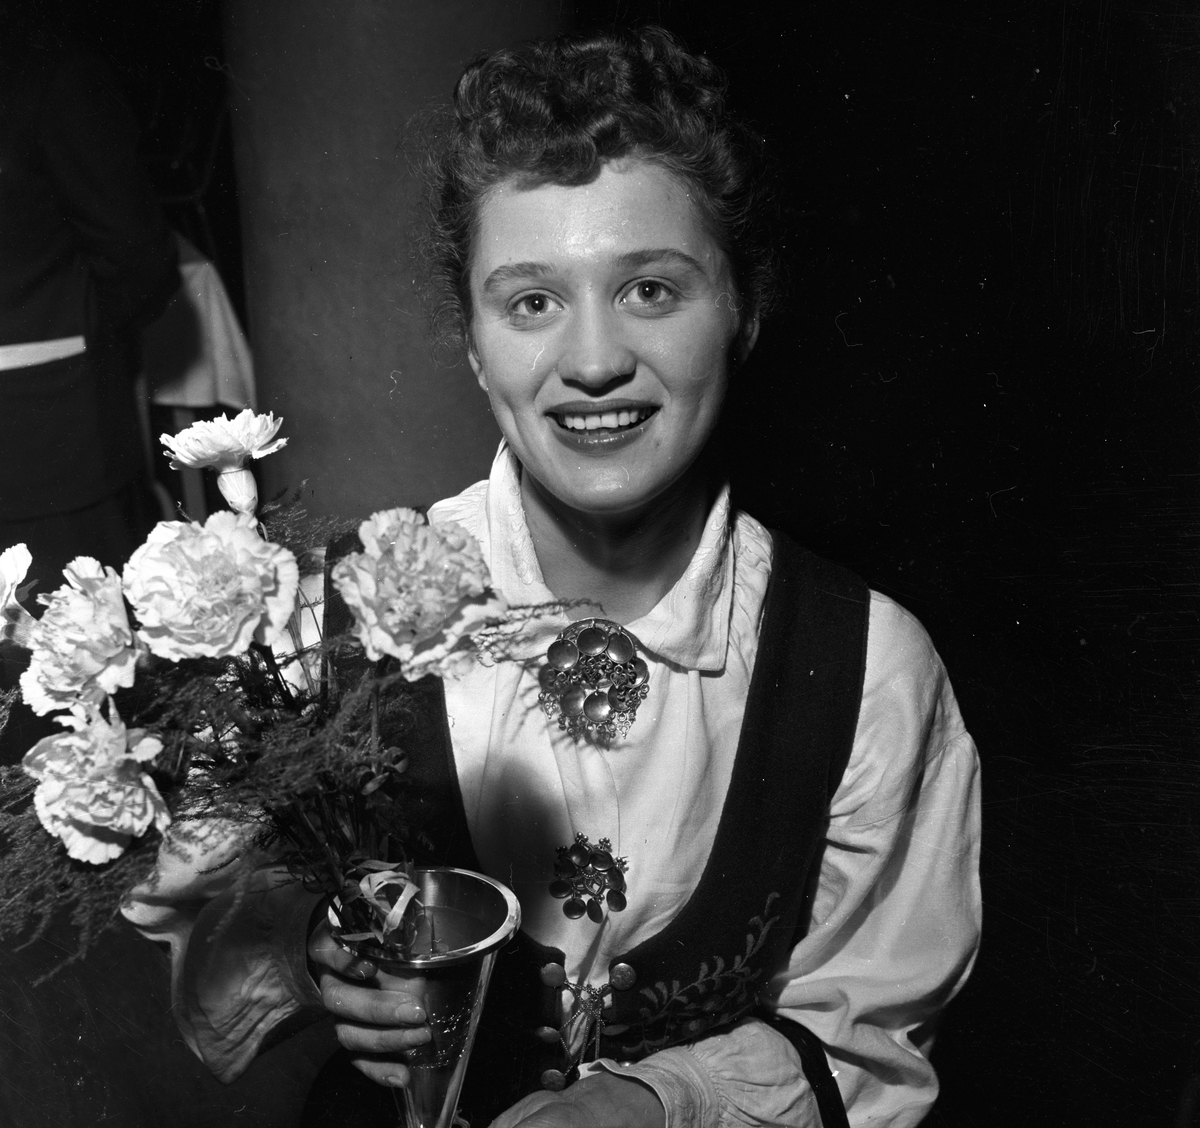 Kvinne med blomster og pokal 30.11.1953. Bygdelag, Norefjellaget.